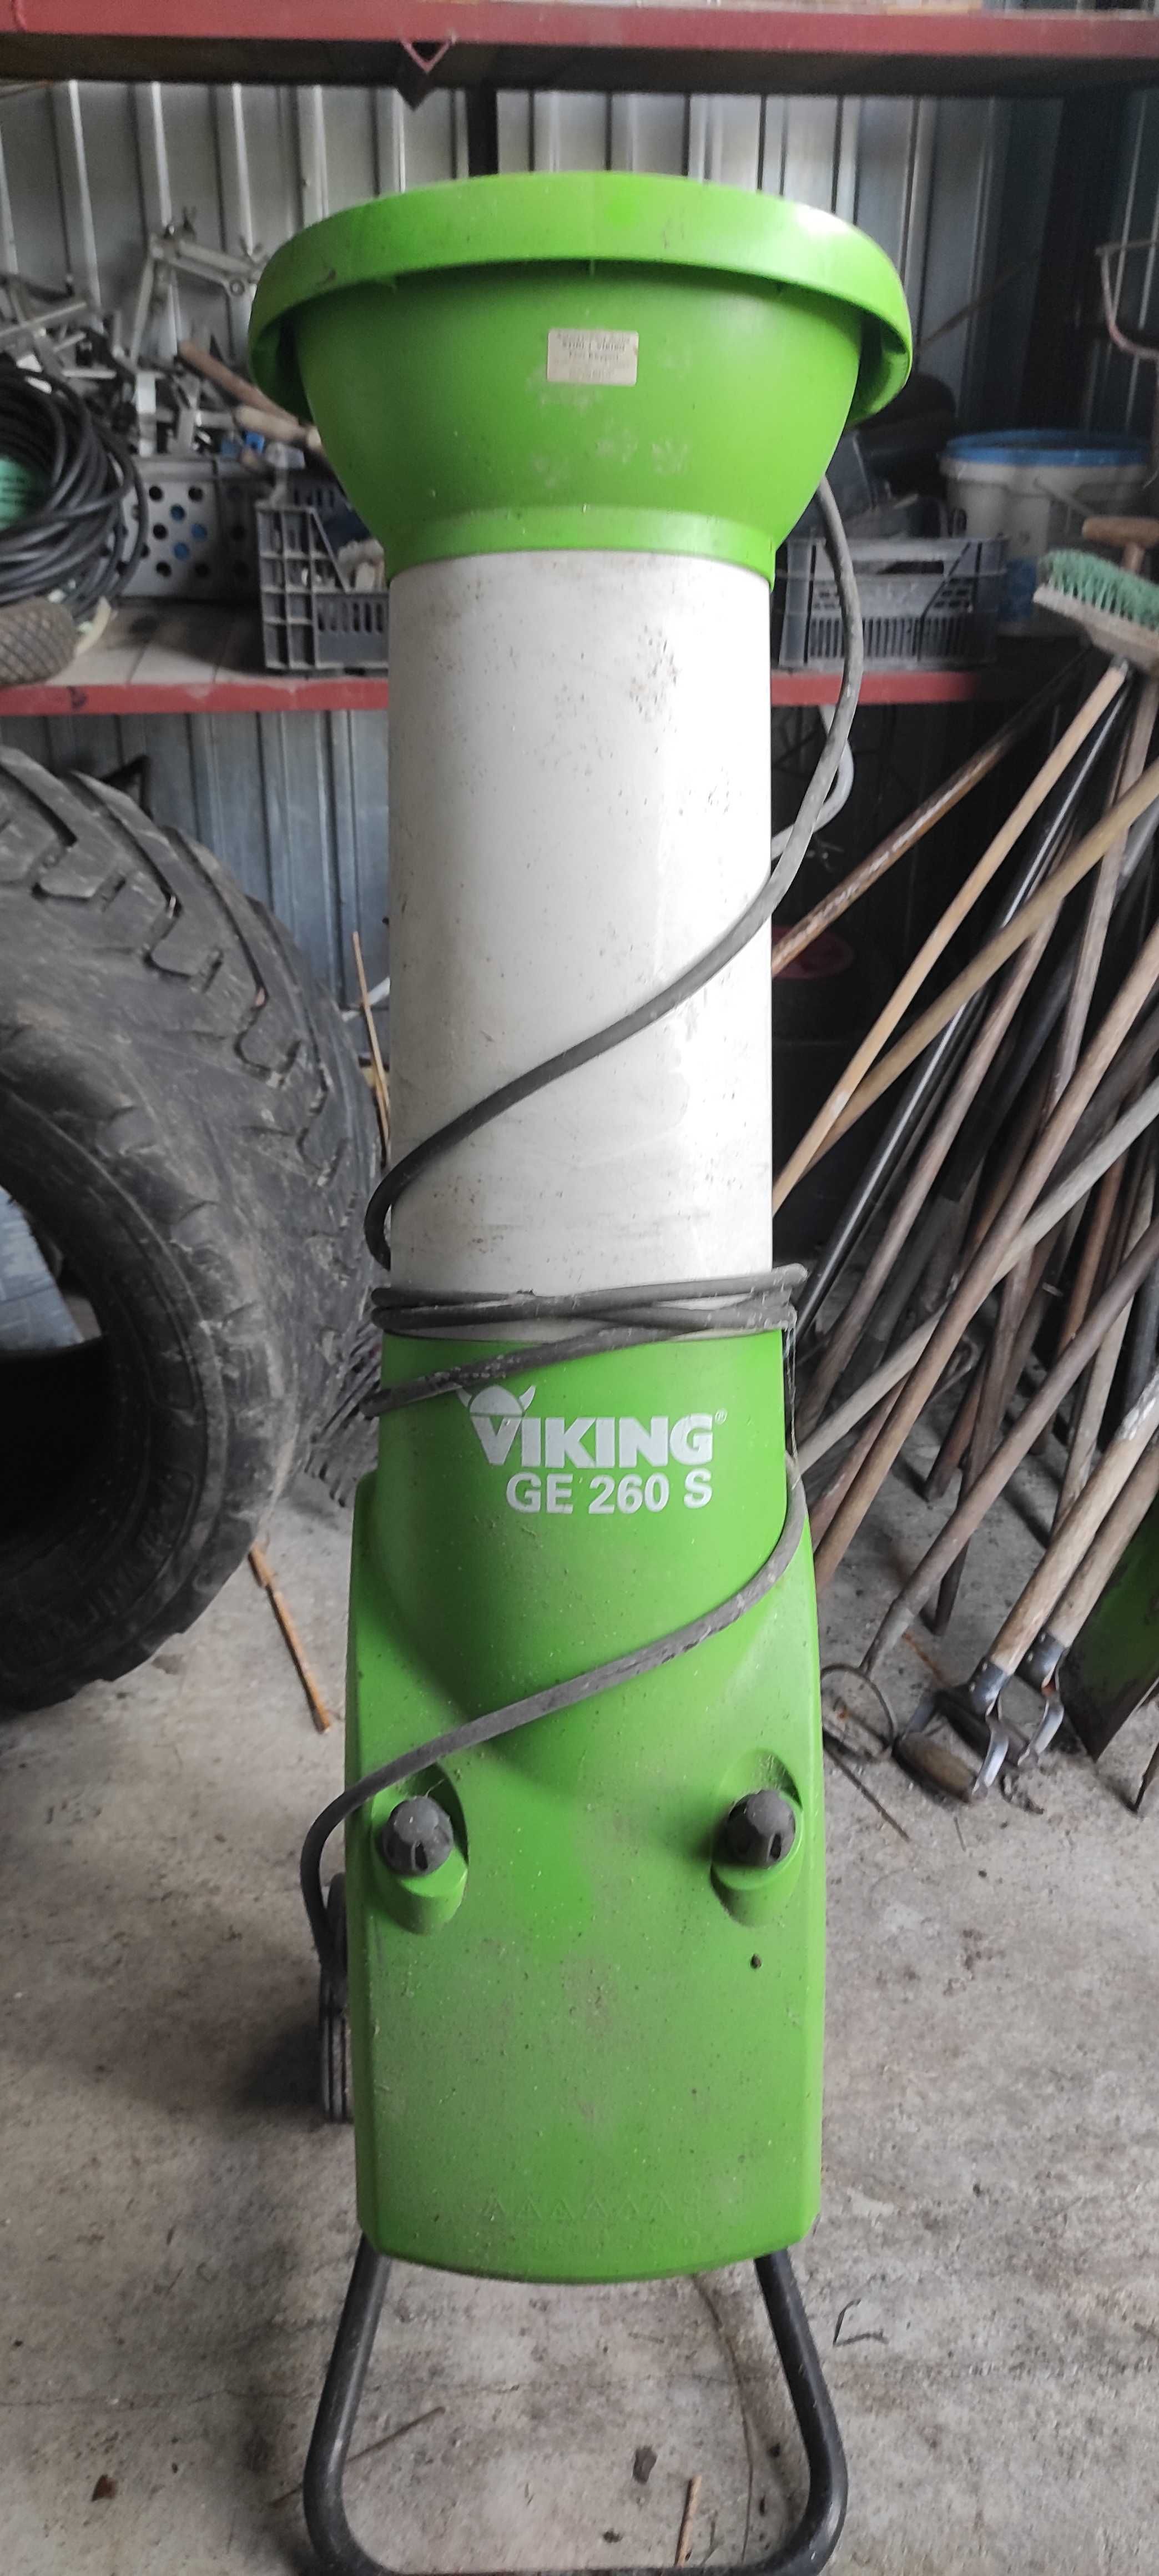 Rozdrabniacz do gałęzi Viking GE260 S